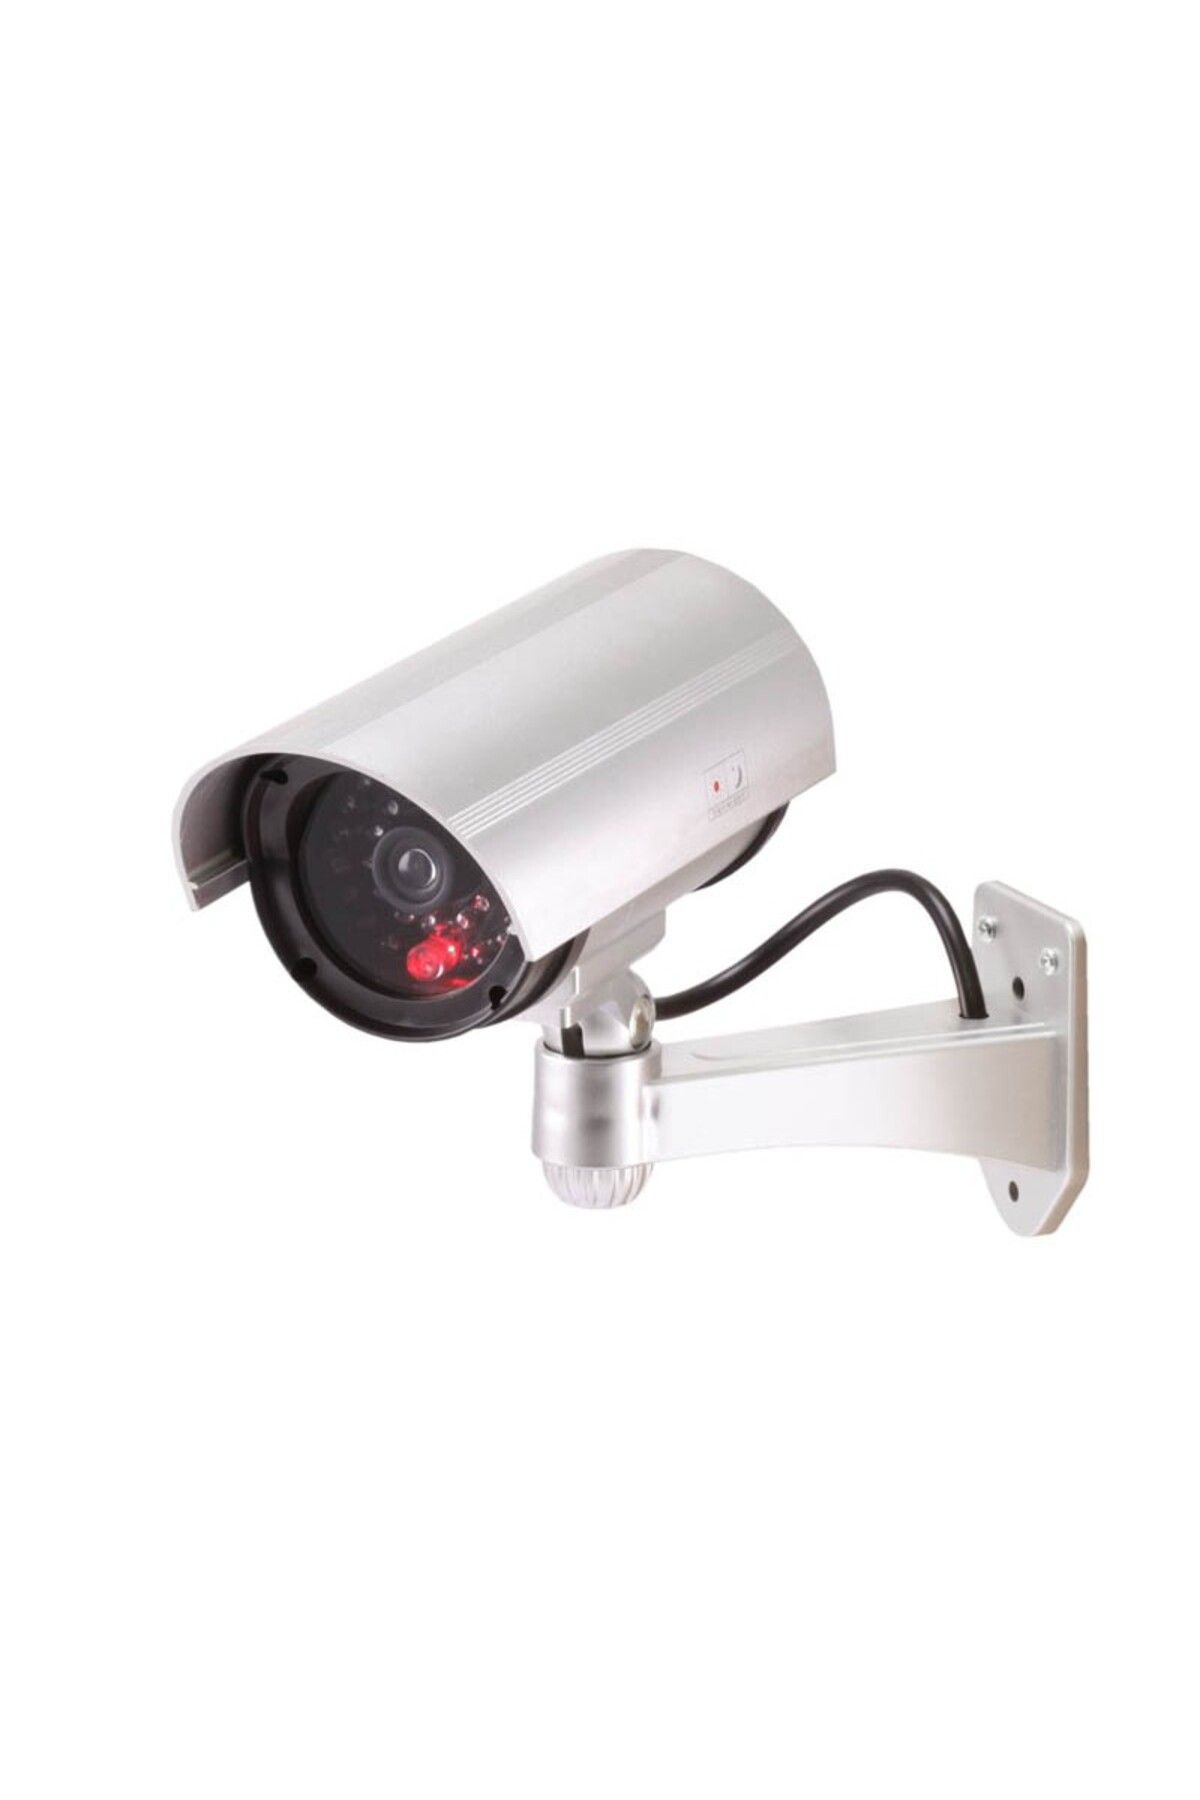 alpanya Gece Görüşlü Güvenlik Hırsız Caydırıcı Yapay Kamera